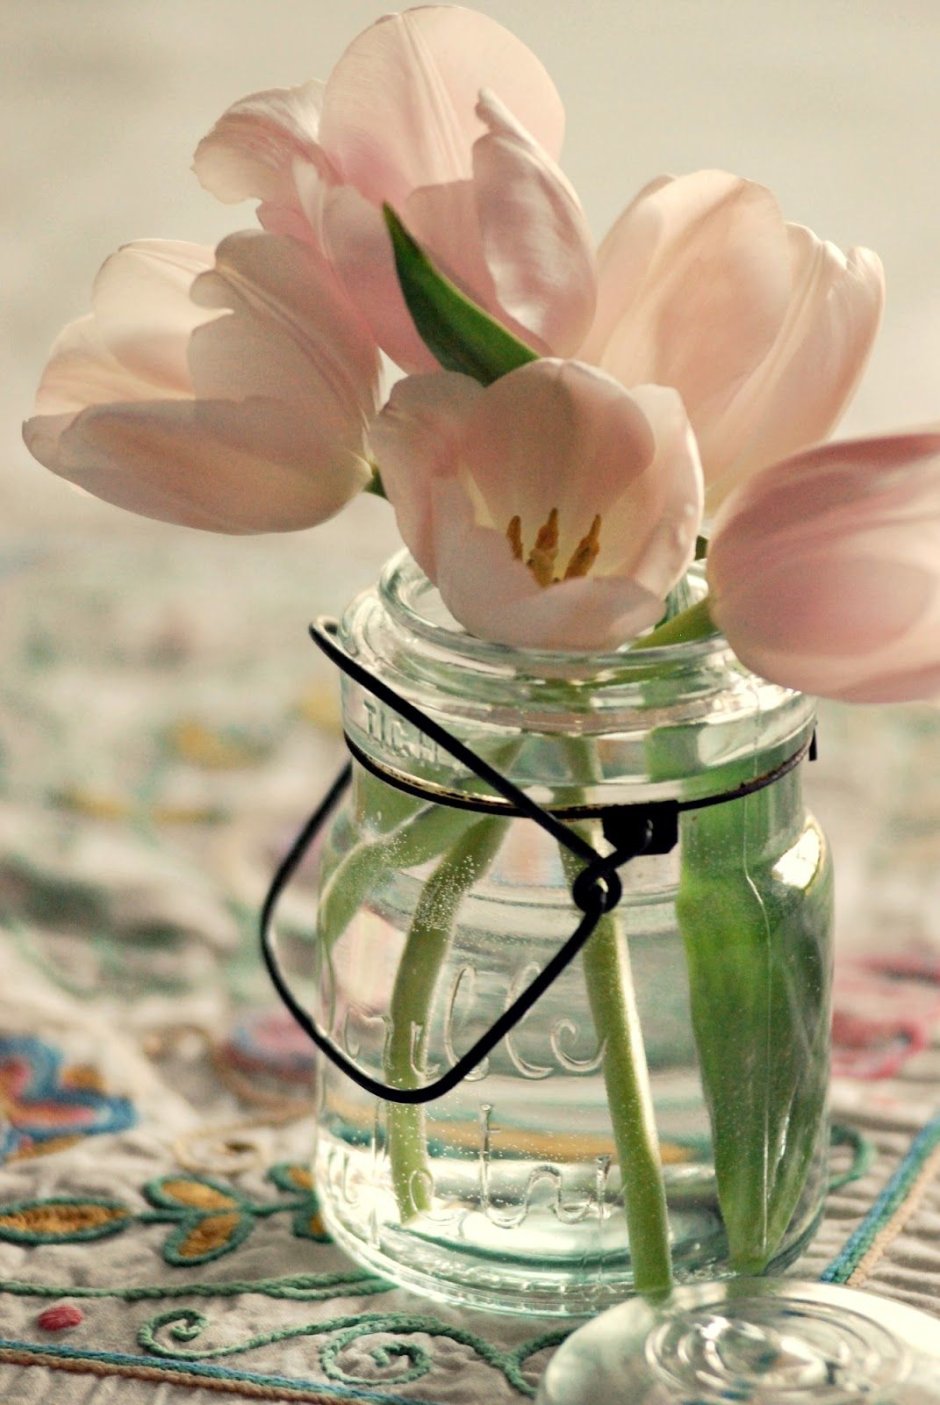 Тюльпаны в стеклянной вазе